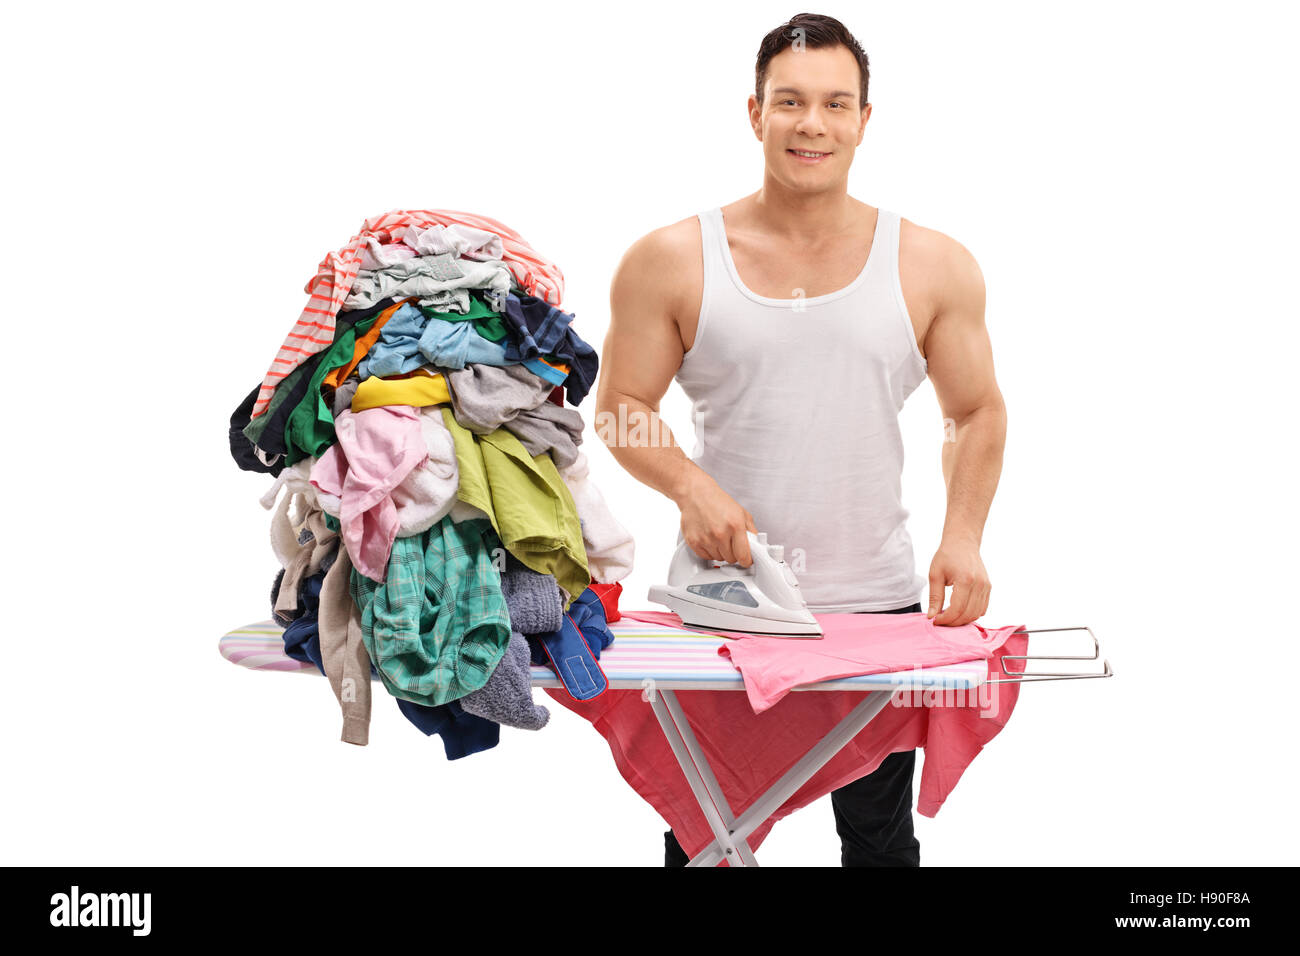 Freudige muskulösen Kerl Bügeln einen Haufen Kleider isoliert auf weißem Hintergrund Stockfoto